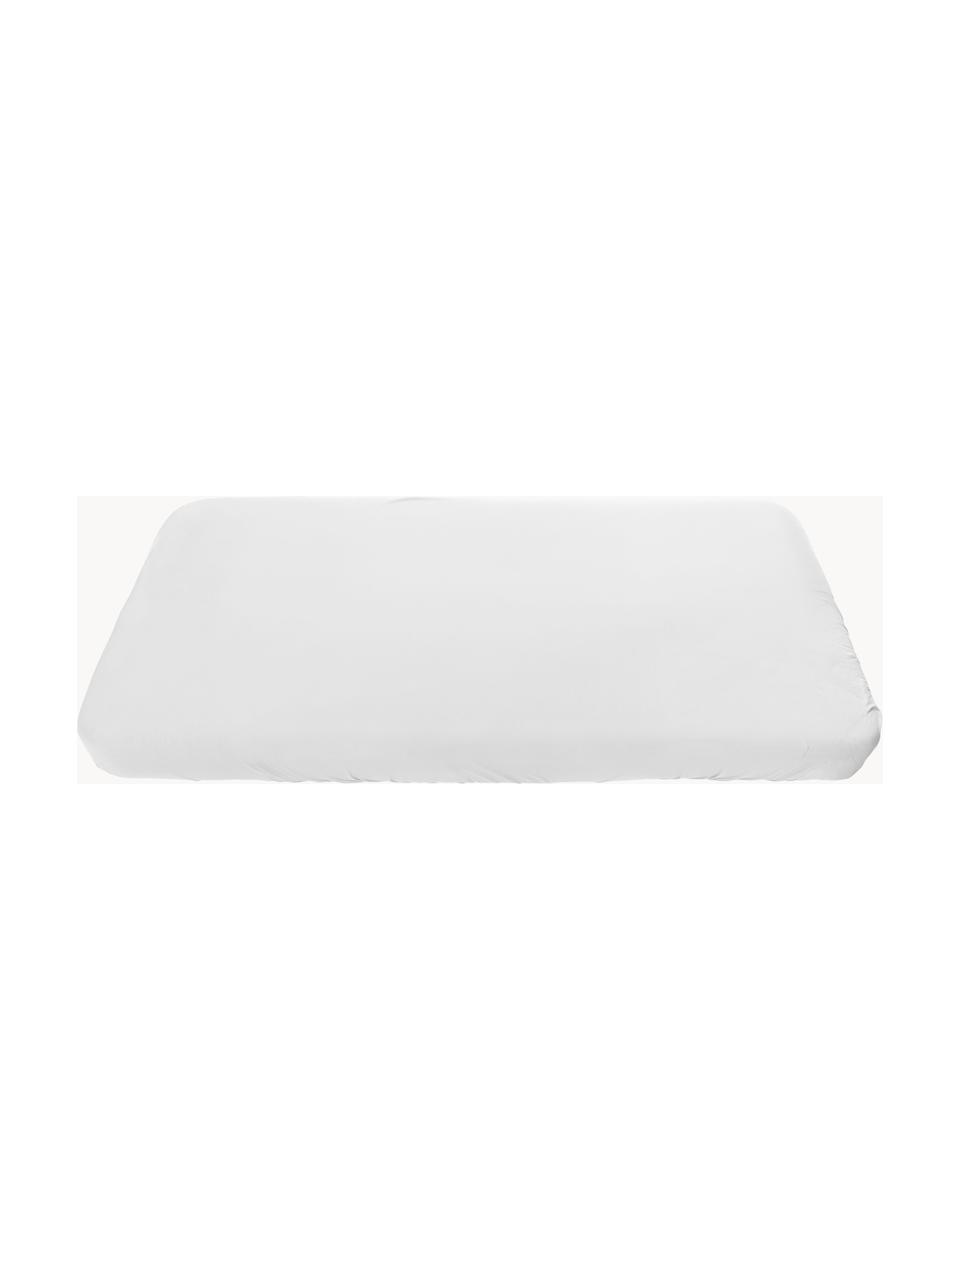 Ochraniacz na materac Sleep, Tapicerka: 100% bawełna, Biały, S 88 x D 162 cm